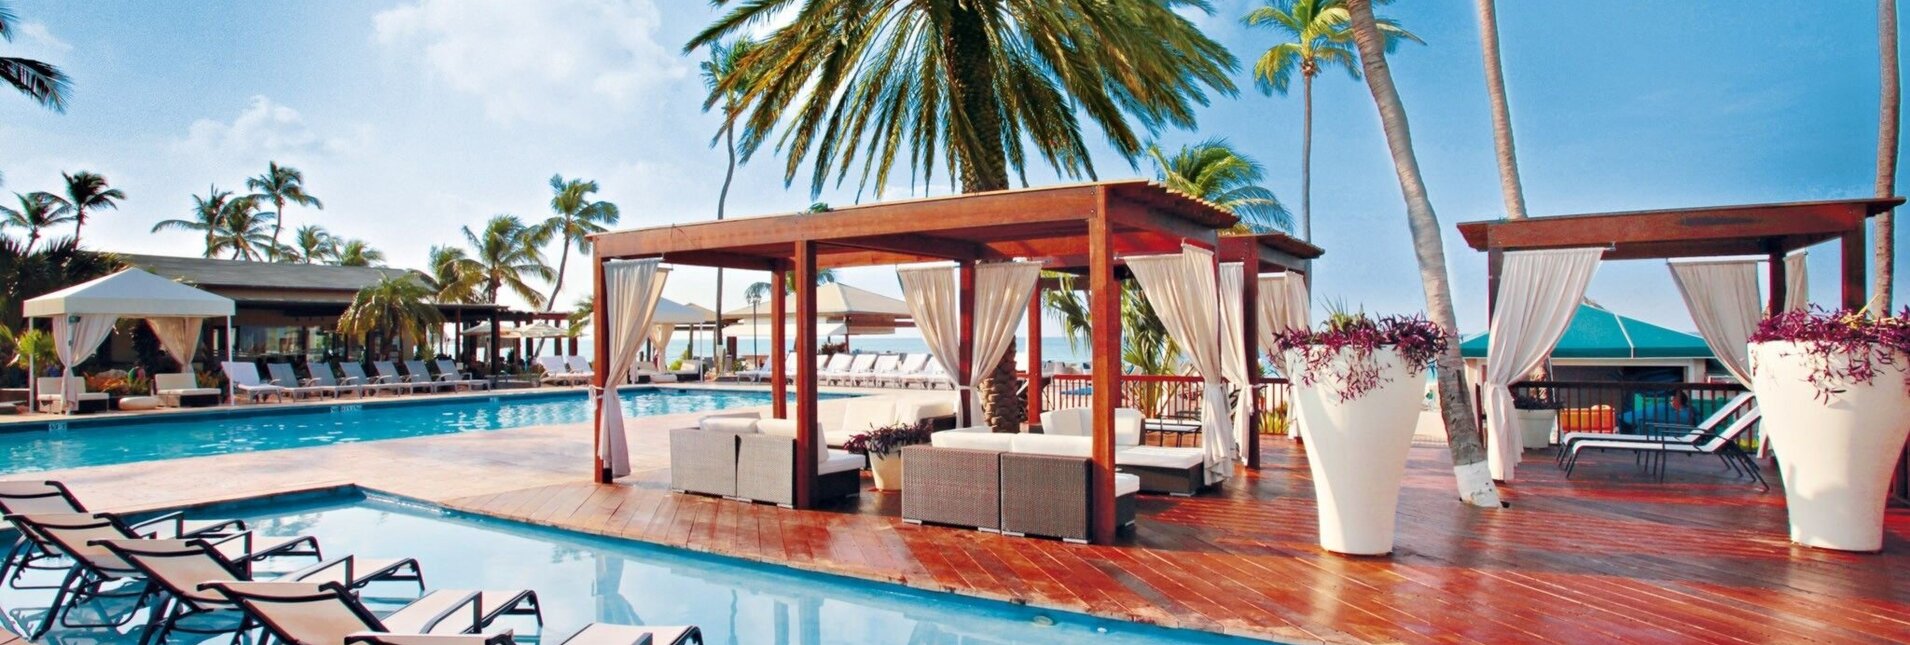 Divi Aruba All Inclusive Resort ****